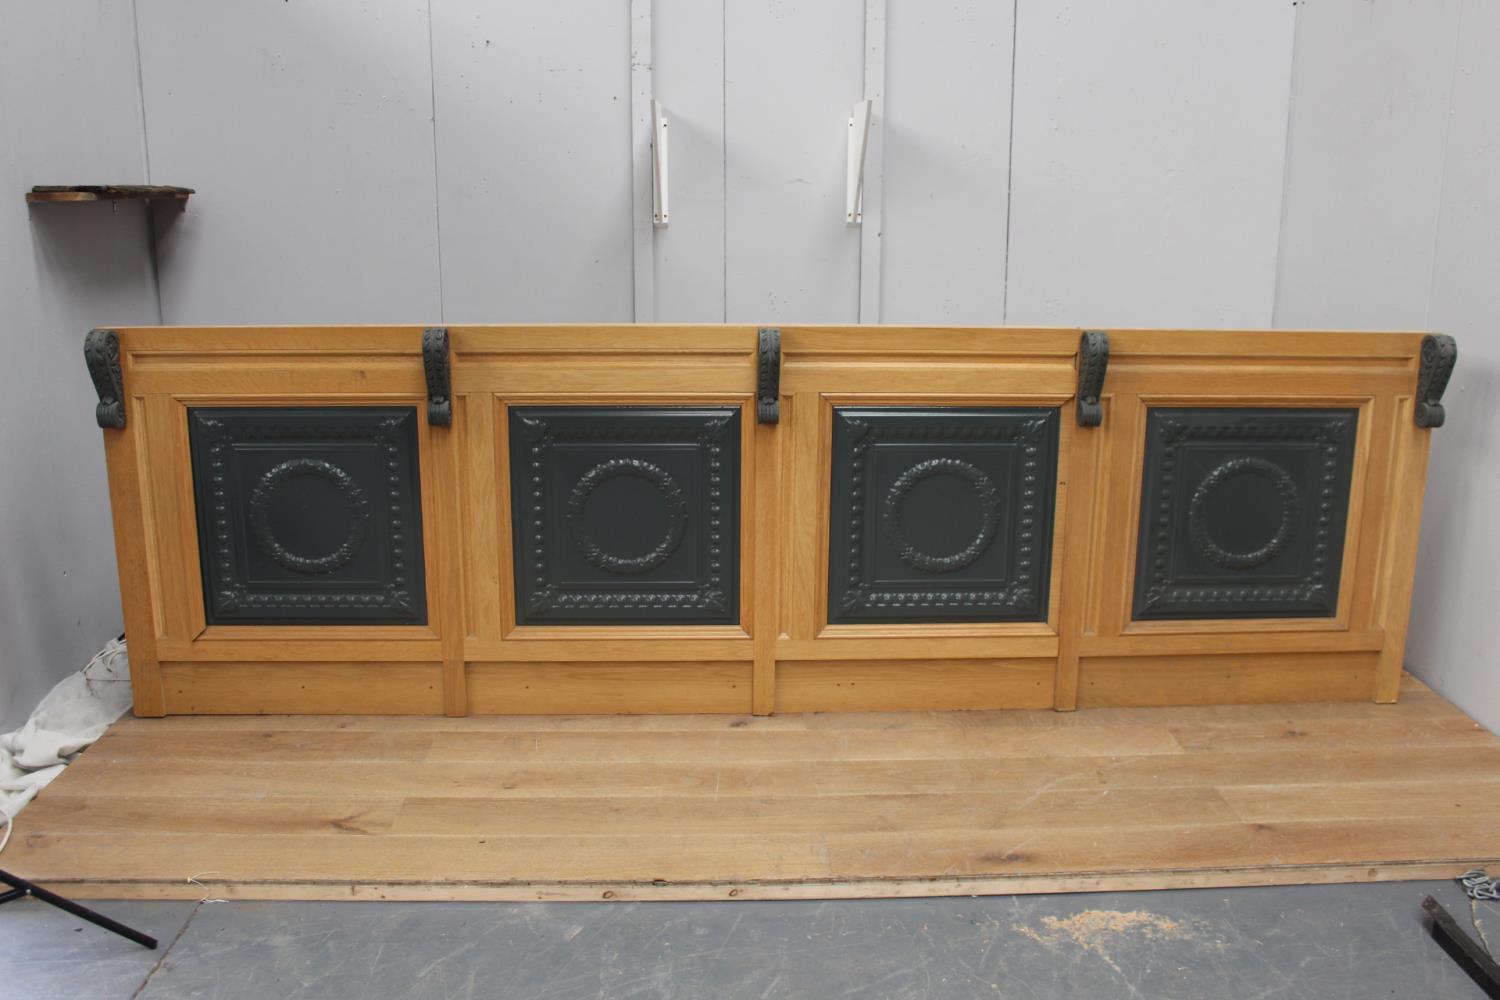 Bar front panelling with decorative aluminium panels {103 cm H x 344 cm W x 74 cm D}.